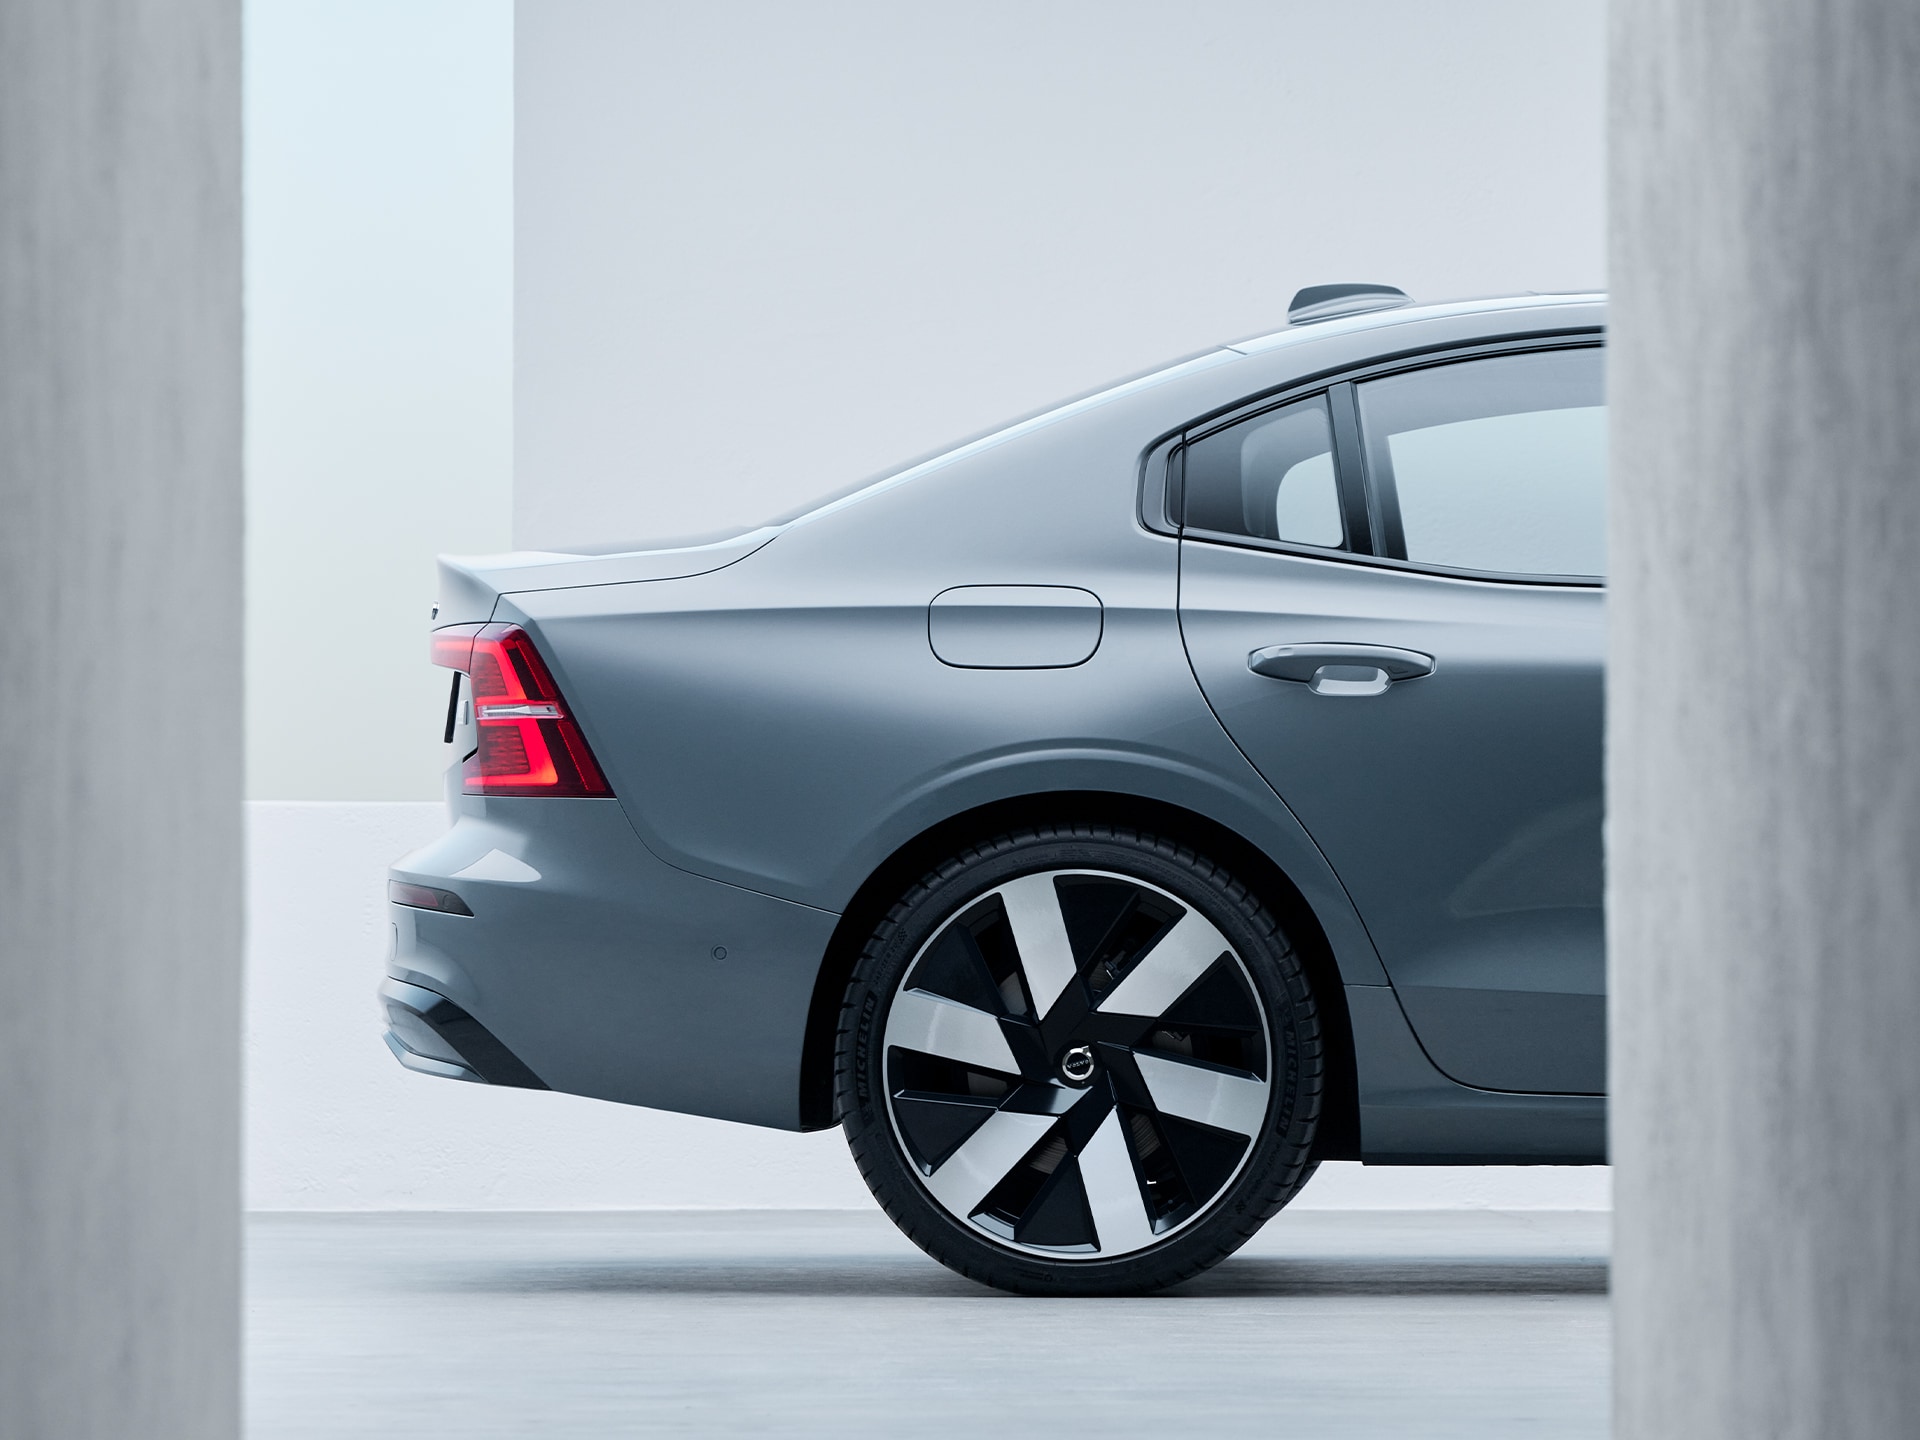 Nouveau design aérodynamique des roues de la Volvo S60 Recharge.